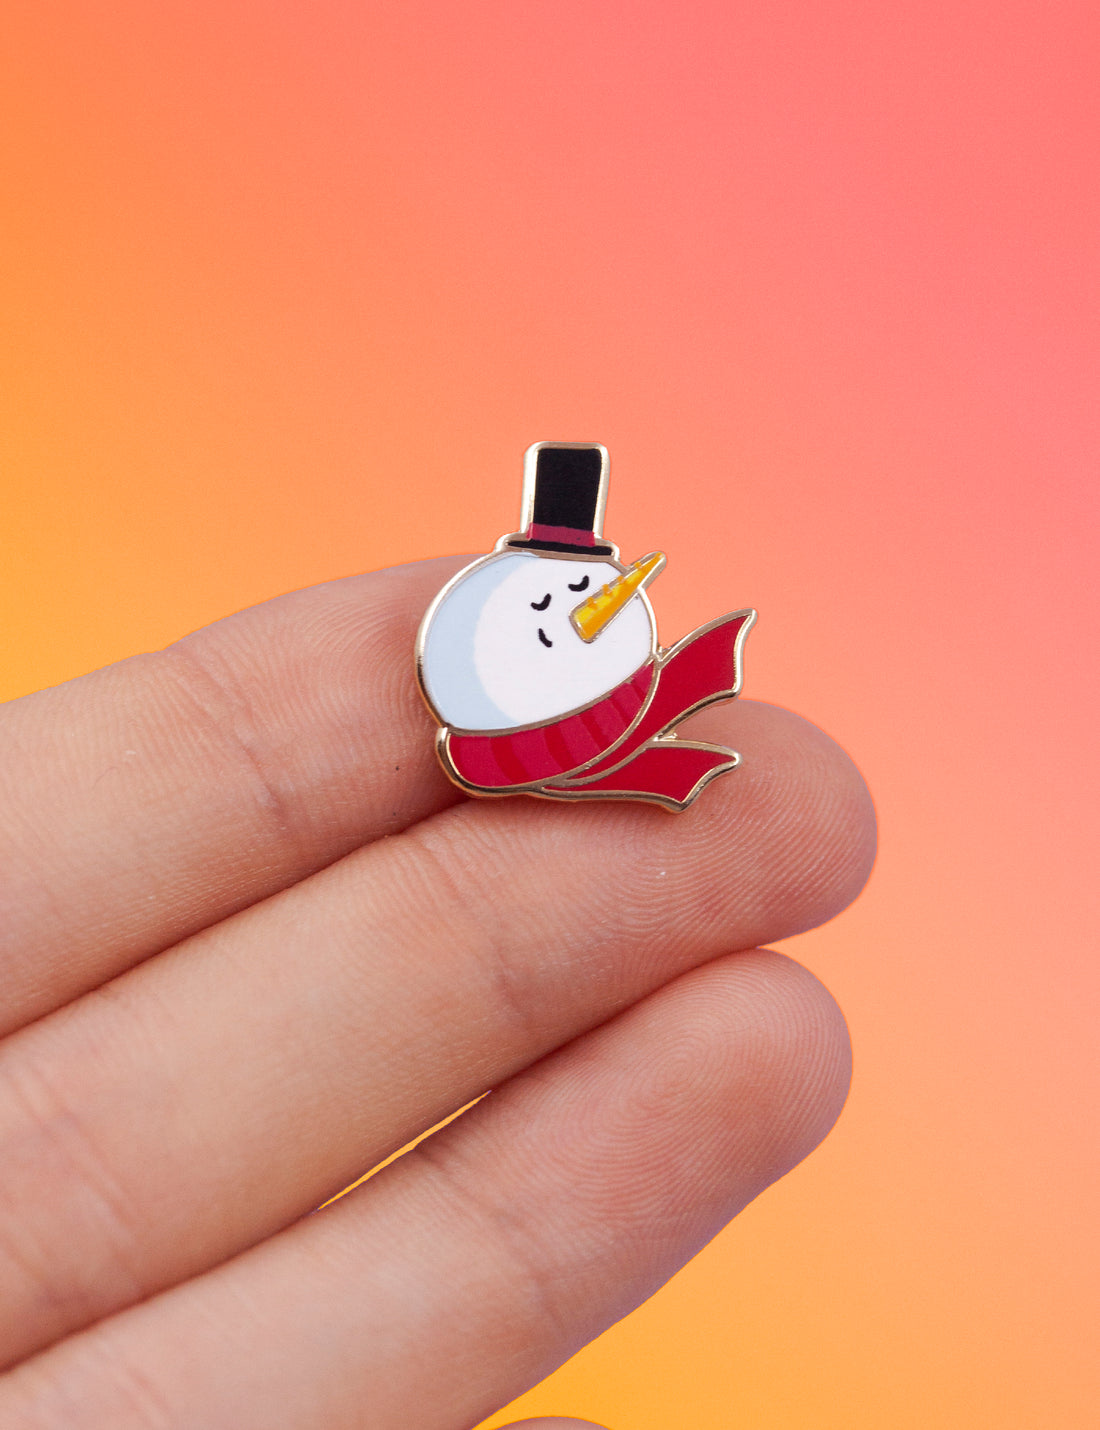 Snowman pin